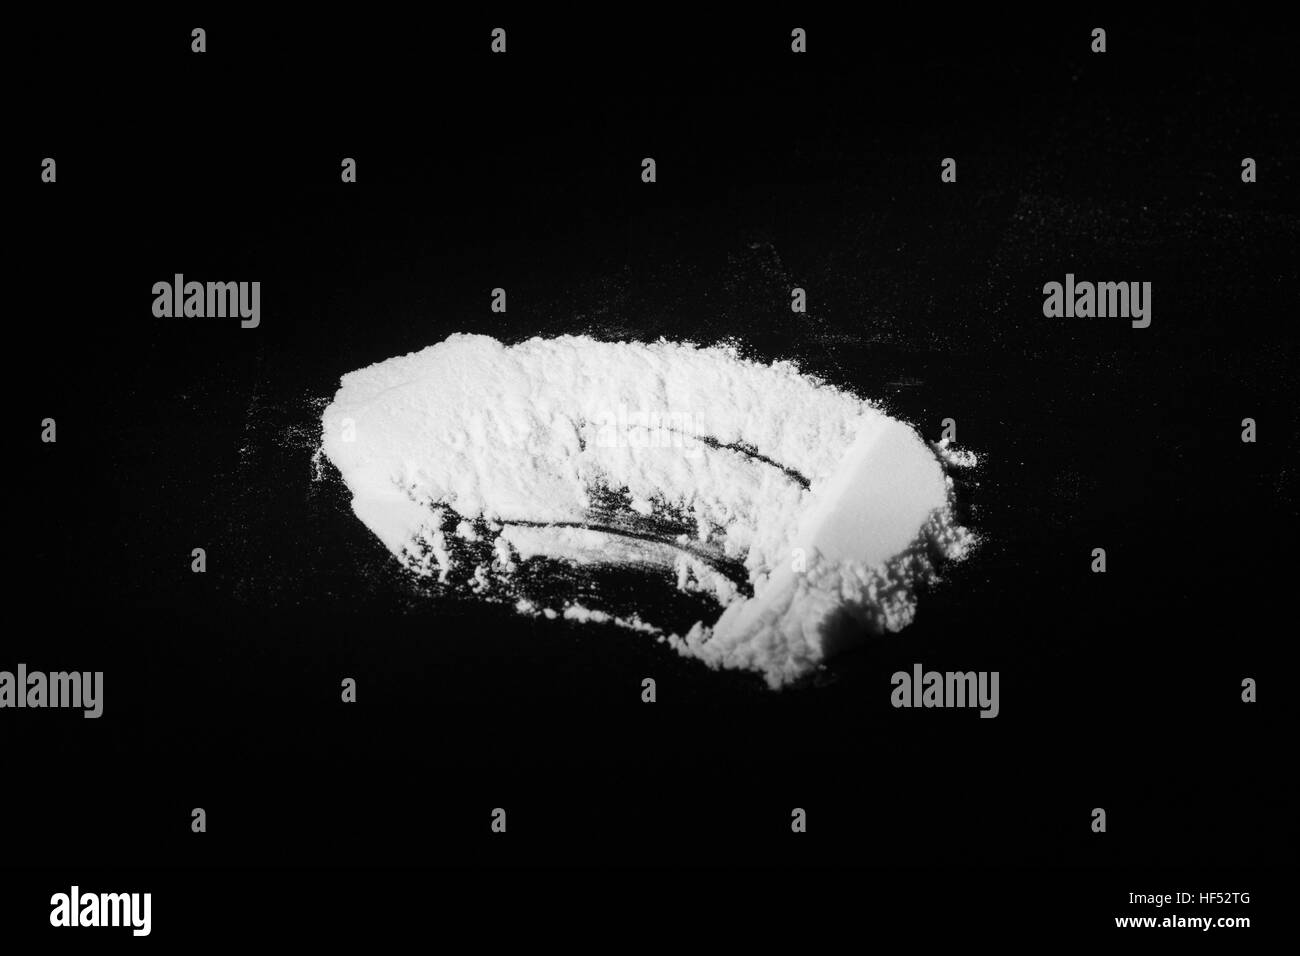 La poussière les stupéfiants blanc sur fond noir, monochrome Banque D'Images